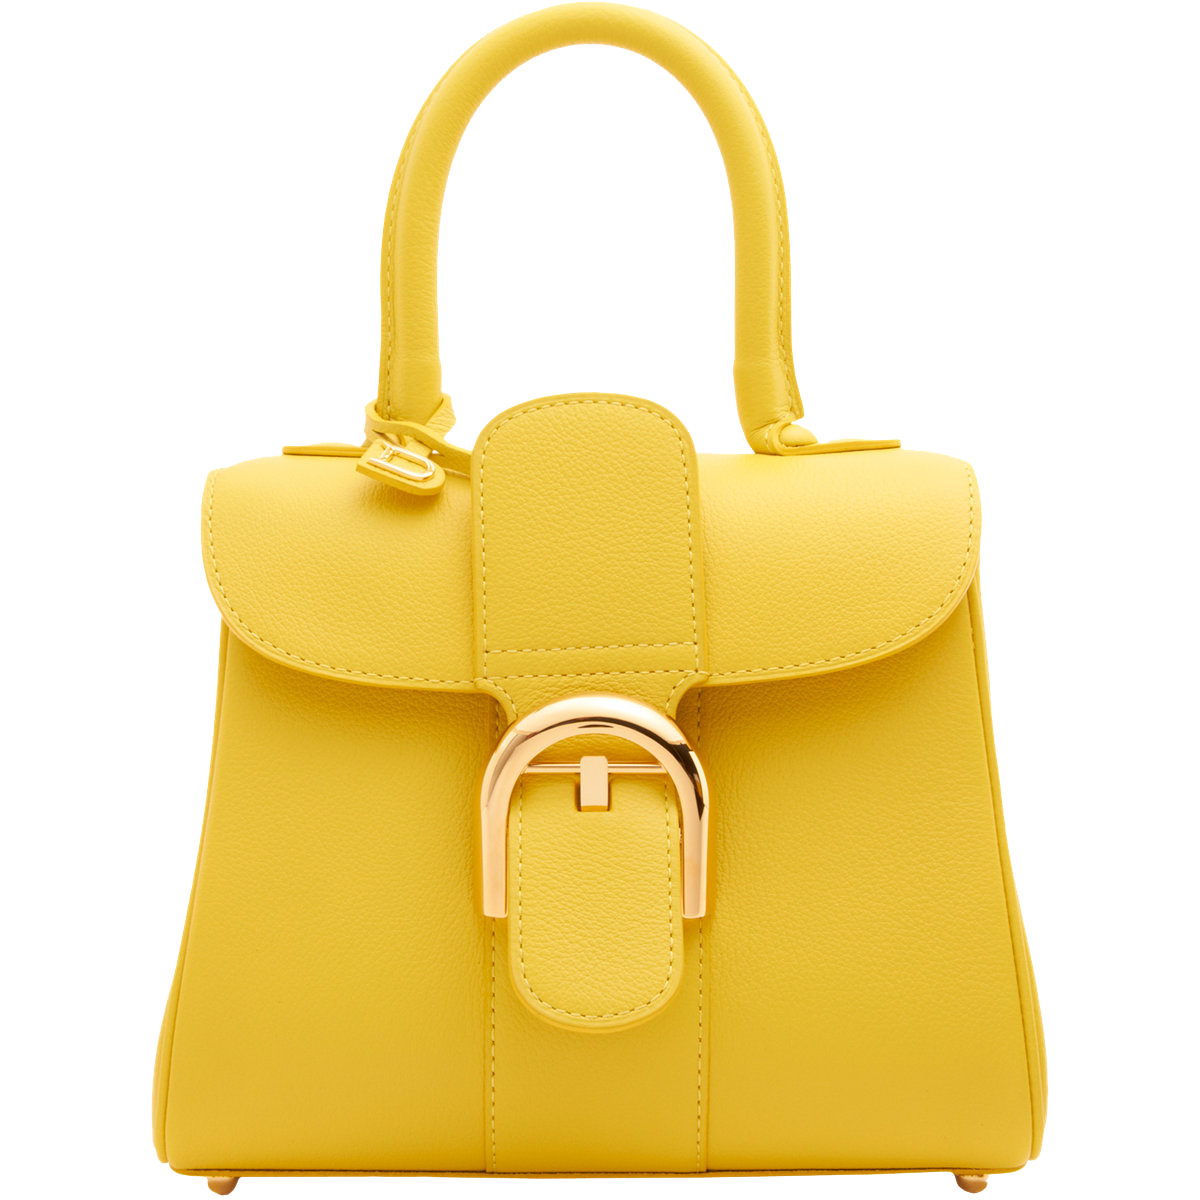 Delvaux Brillant Mini yellow leather handbag